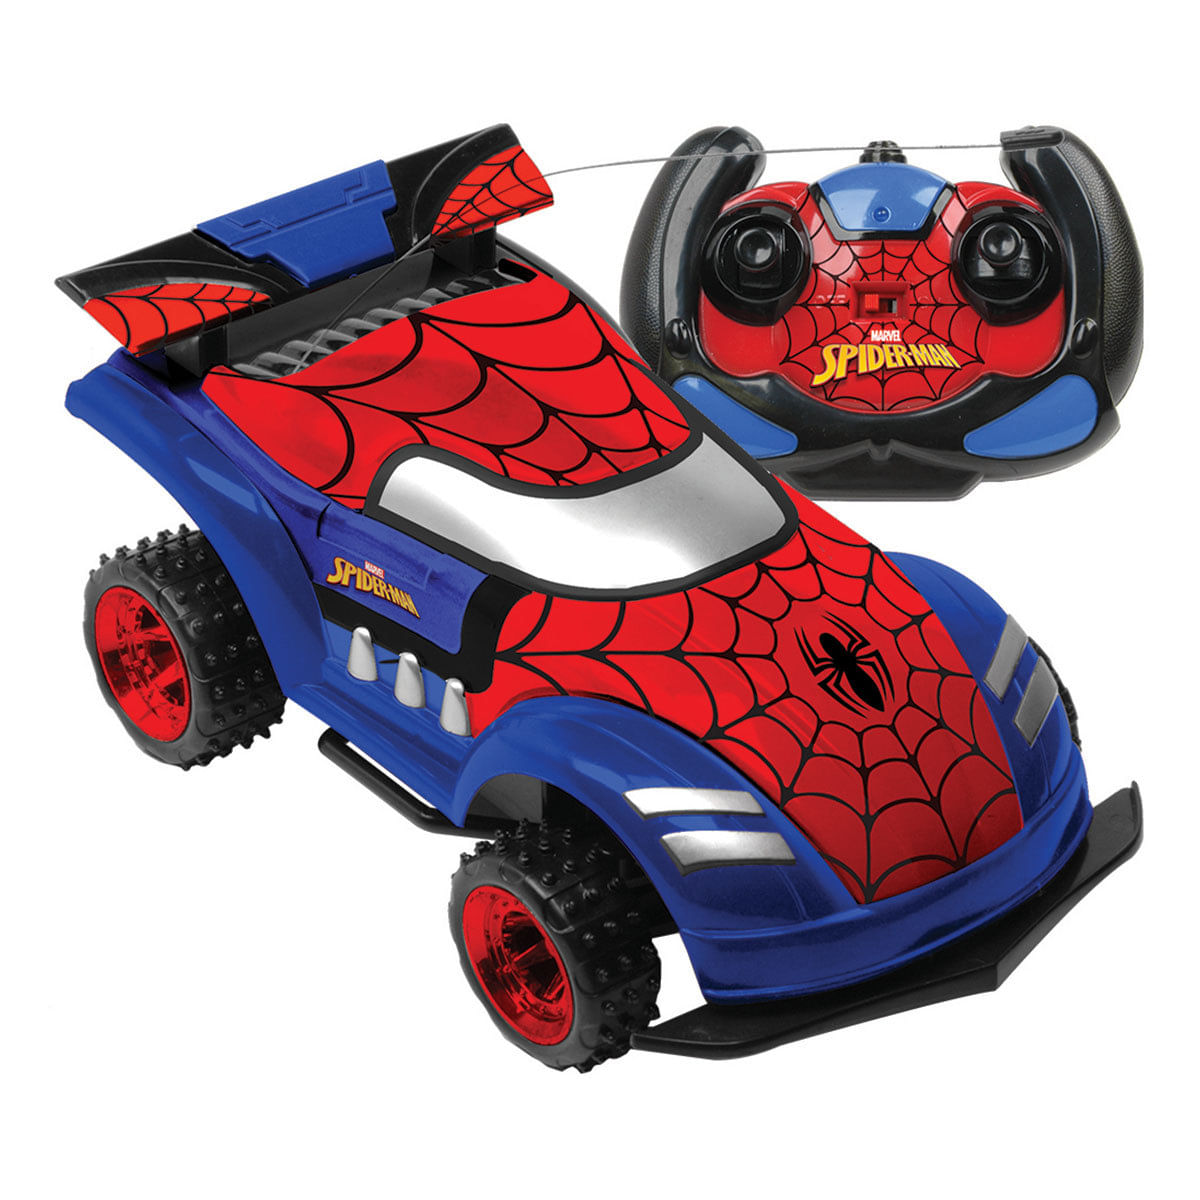 Carrinho Homem Aranha Controle Remoto 7 Funções Bateria - Pirlimpimpim  Brinquedos